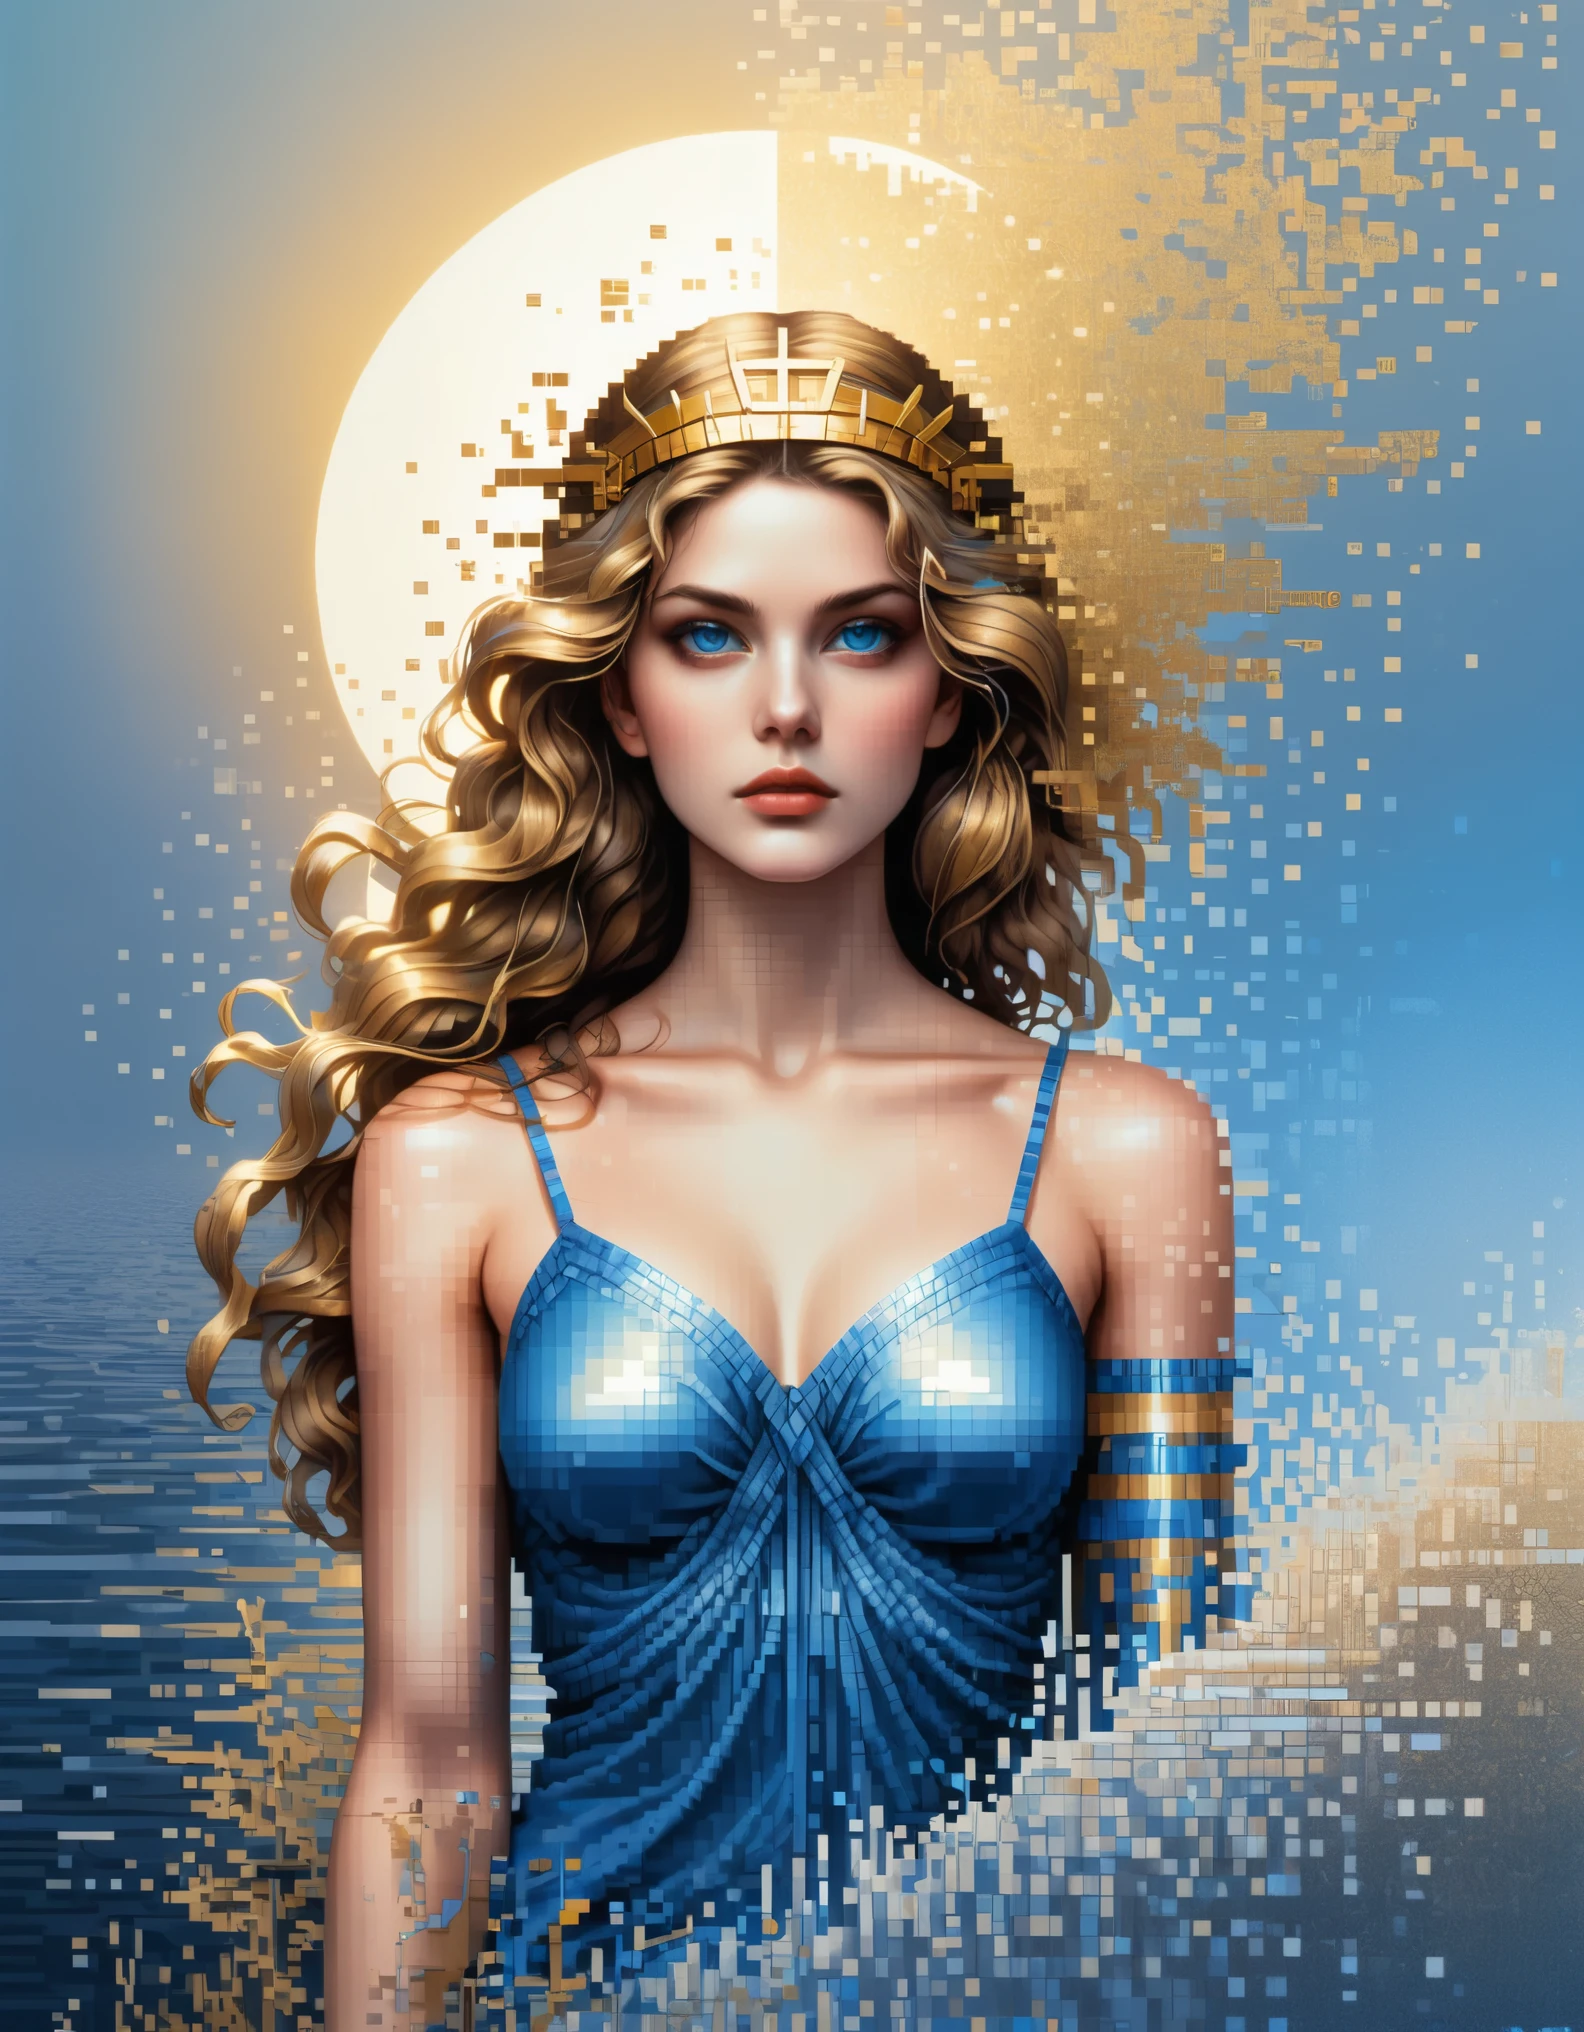 像素藝術,阿波羅尼亞聖克萊爾風格, 美麗的細節，美麗的女神雅典娜，溶解像素的藍色漸變色，（全身），異常美麗的藍眼睛，逐漸分解，金色的陽光照進來，水中的部分反射，